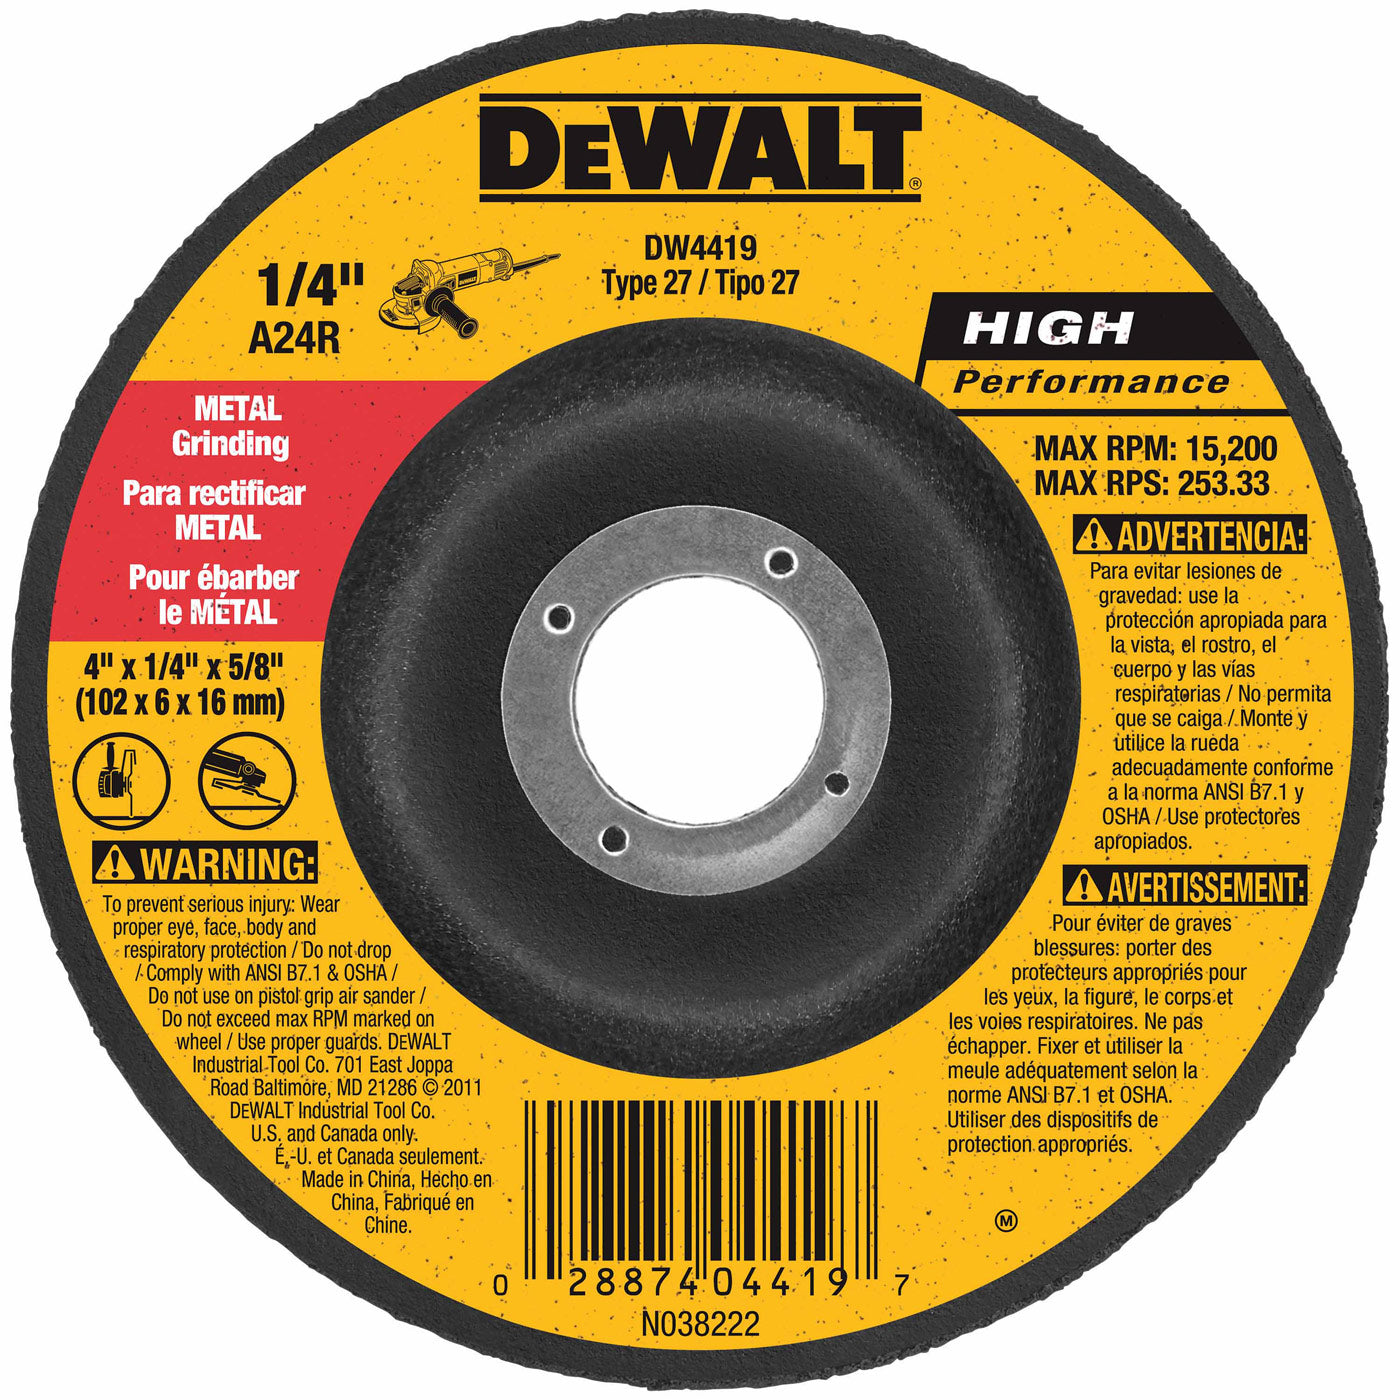 DeWalt DW4419 4" x 1/4" x 5/8" General Purpose Metal Grinding Wheel